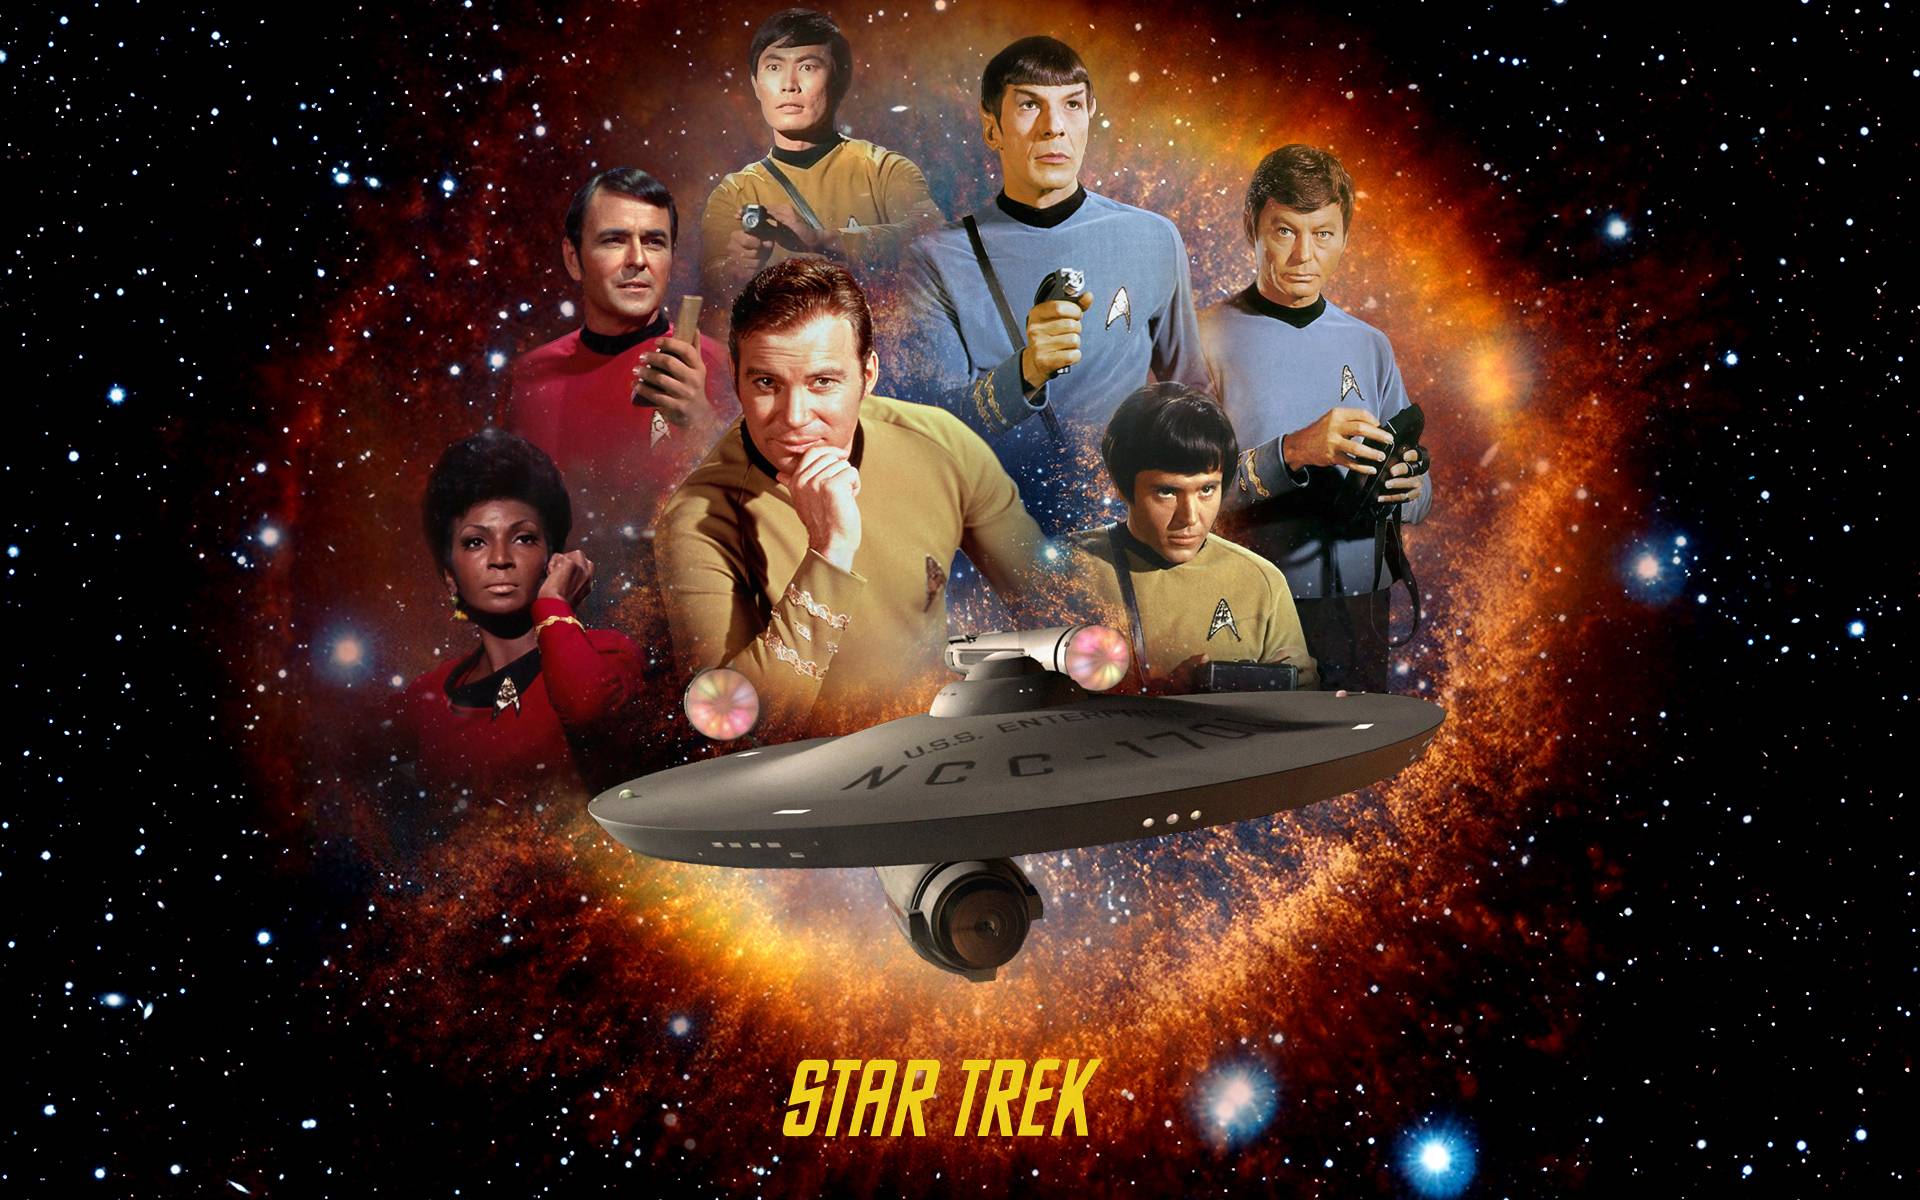 Star Trek The Original Series